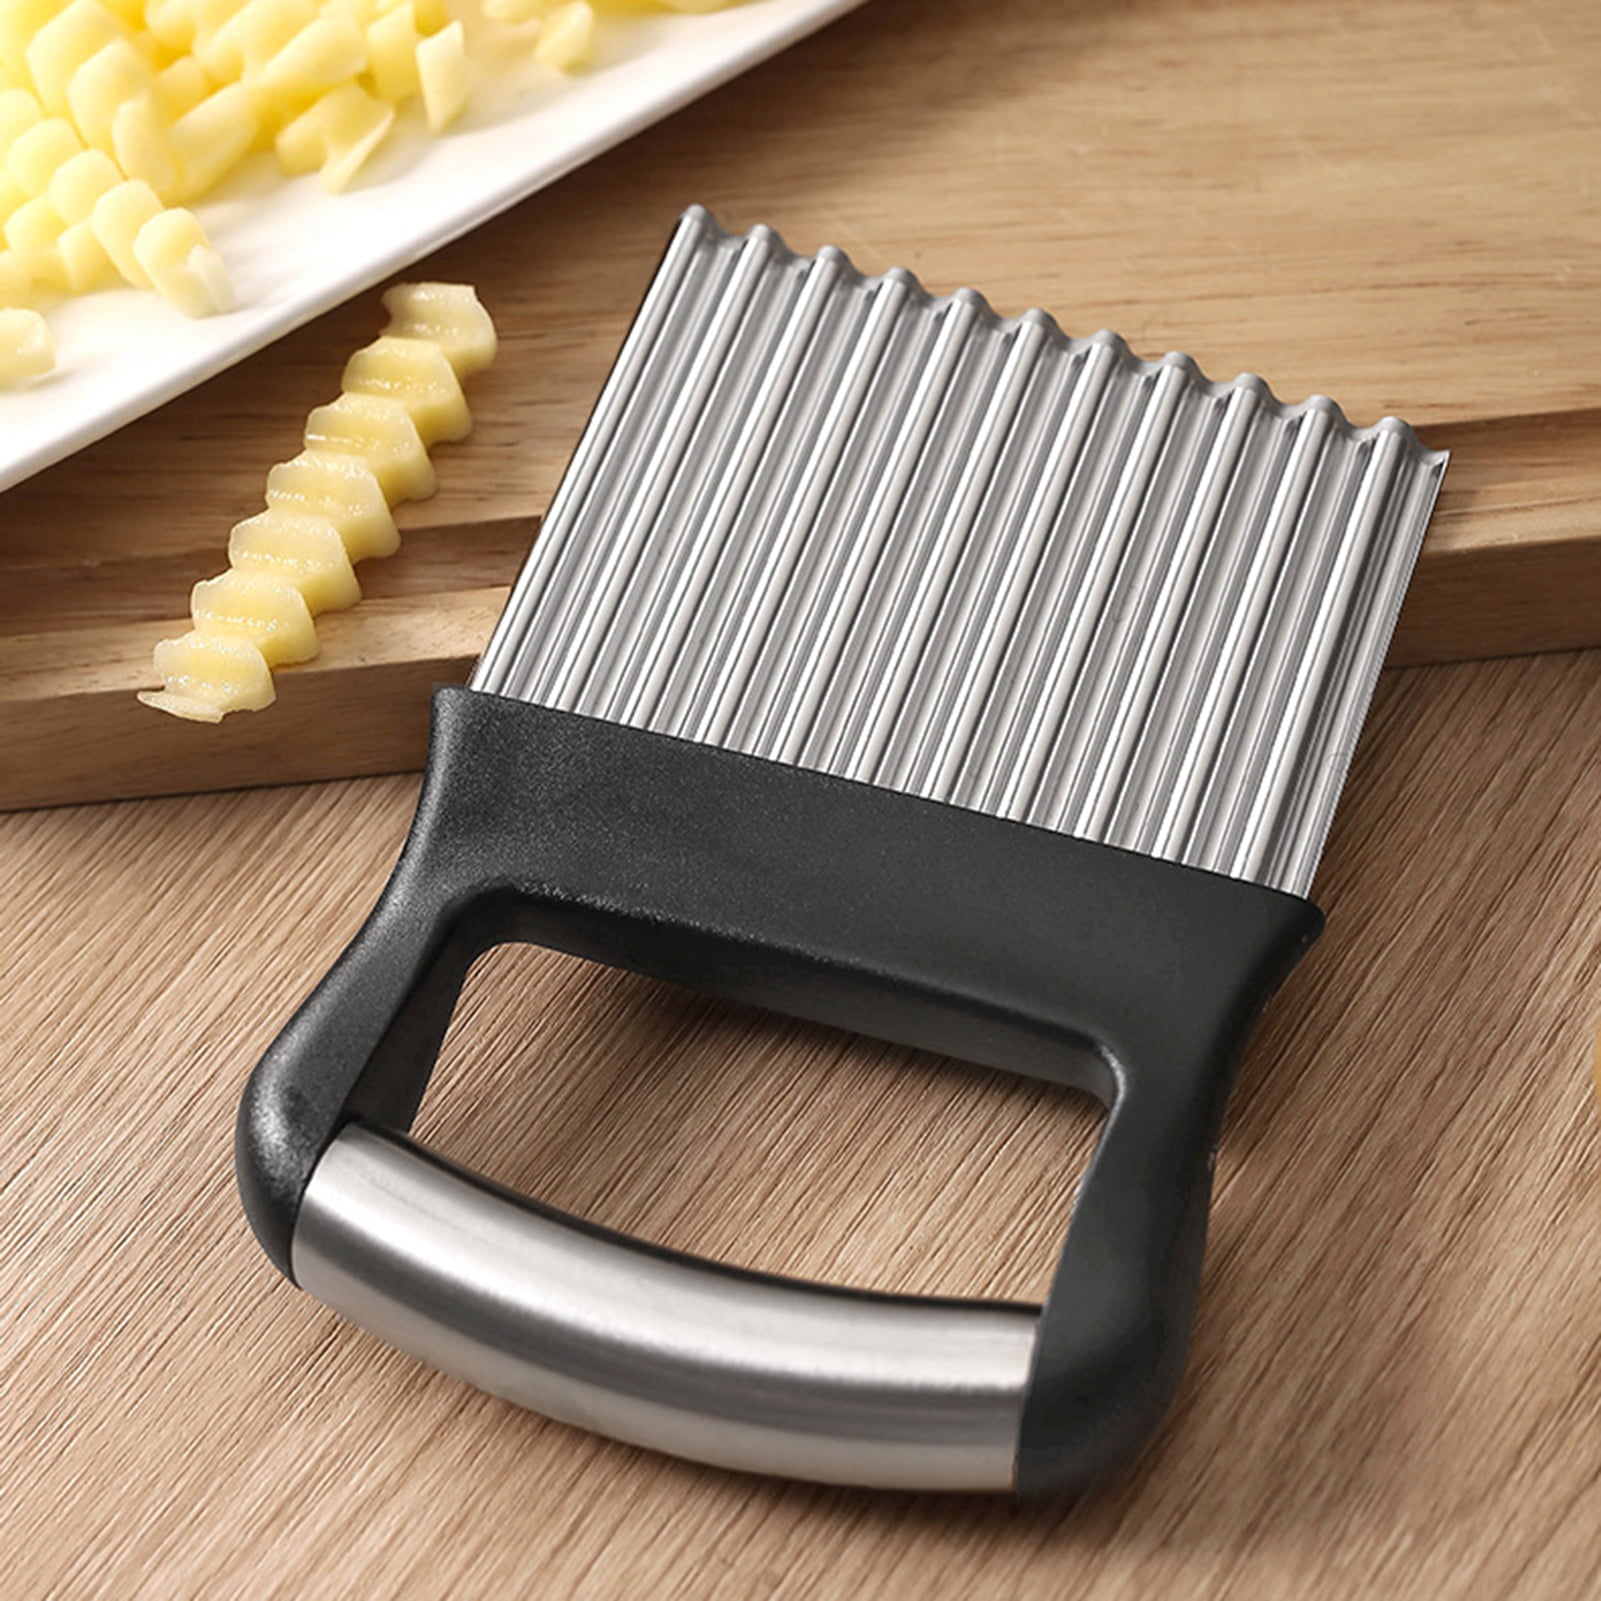 Countertop Vertical Potato Cutter with 1/4″ Cutter Blade – Omcan